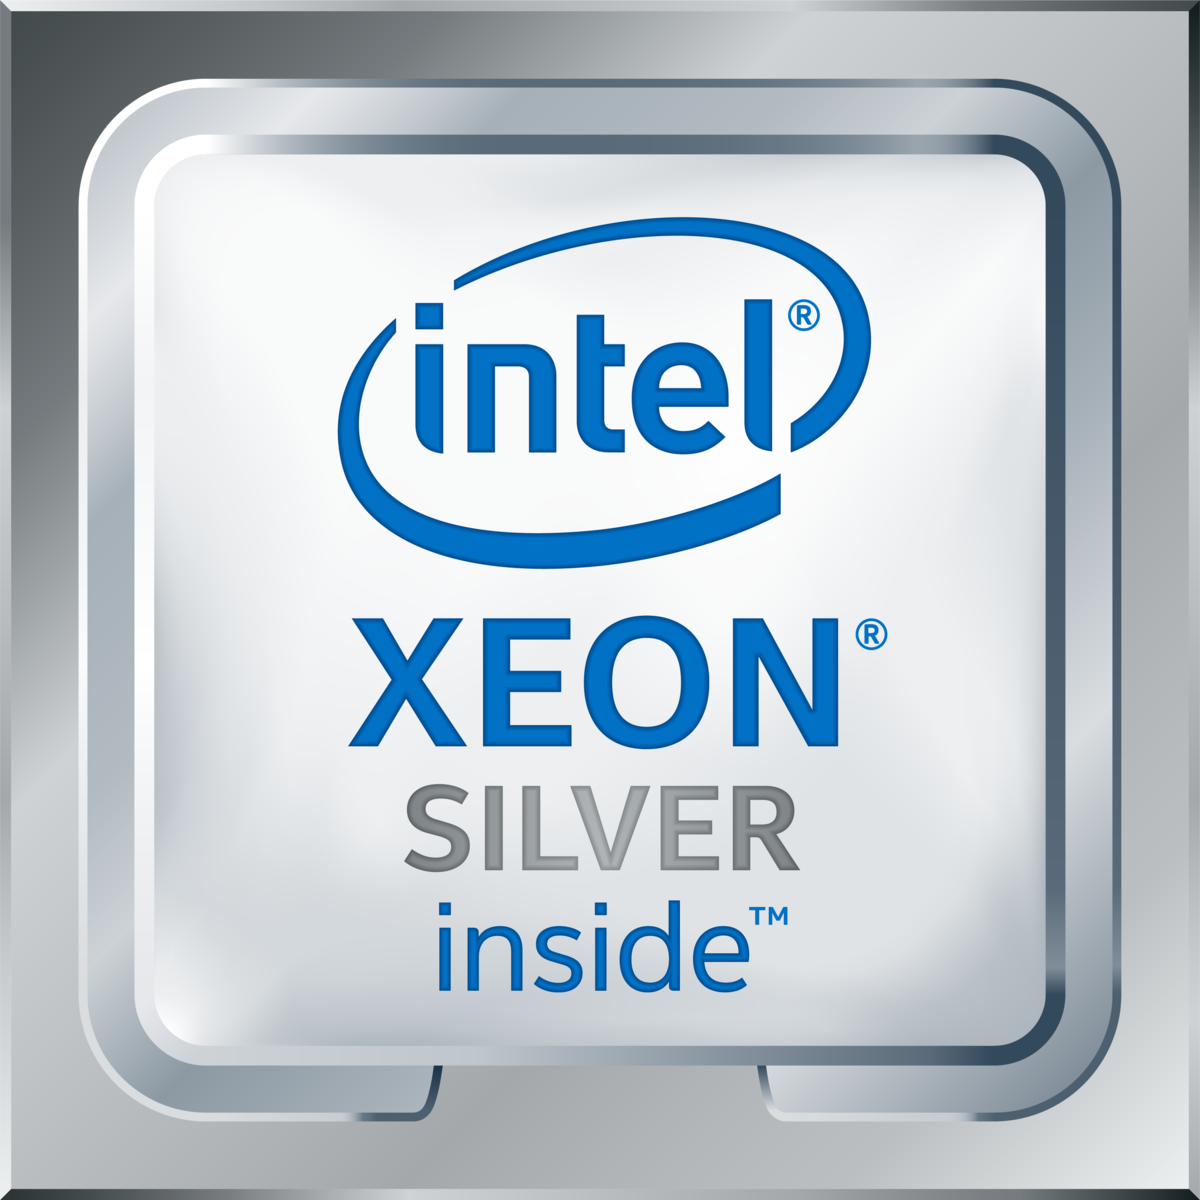 Intel(R) Xeon(R) Silver 4114 CPU @ 2.20GHz's logo